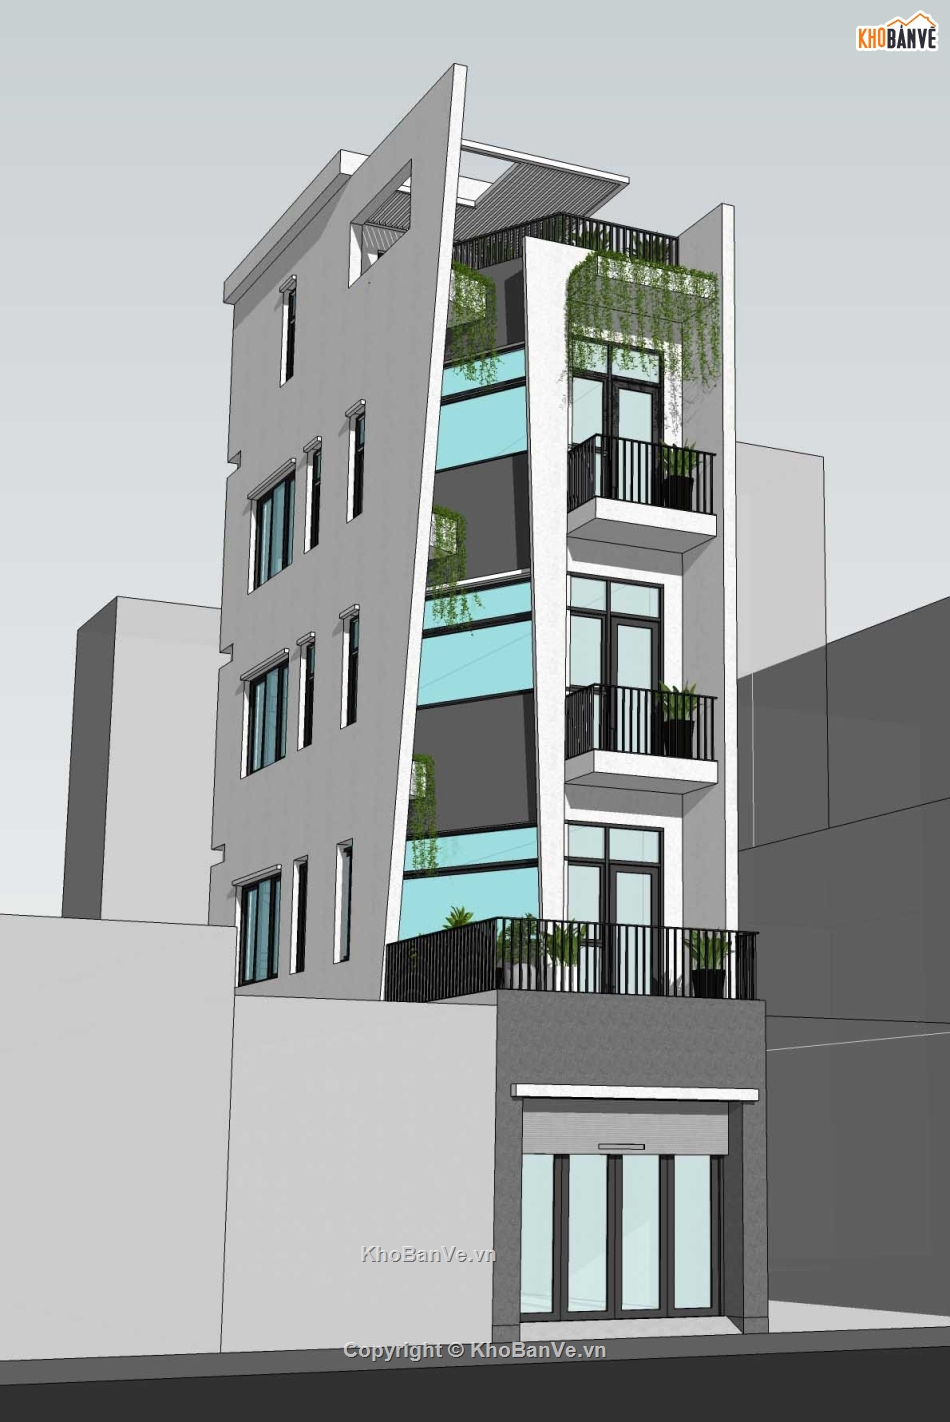 Nhà phố 5 tầng,Nhà phố 3.6x18,Nhà phố hiện đại,Phương án nhà phố,File sketchup nhà phố hiện đại